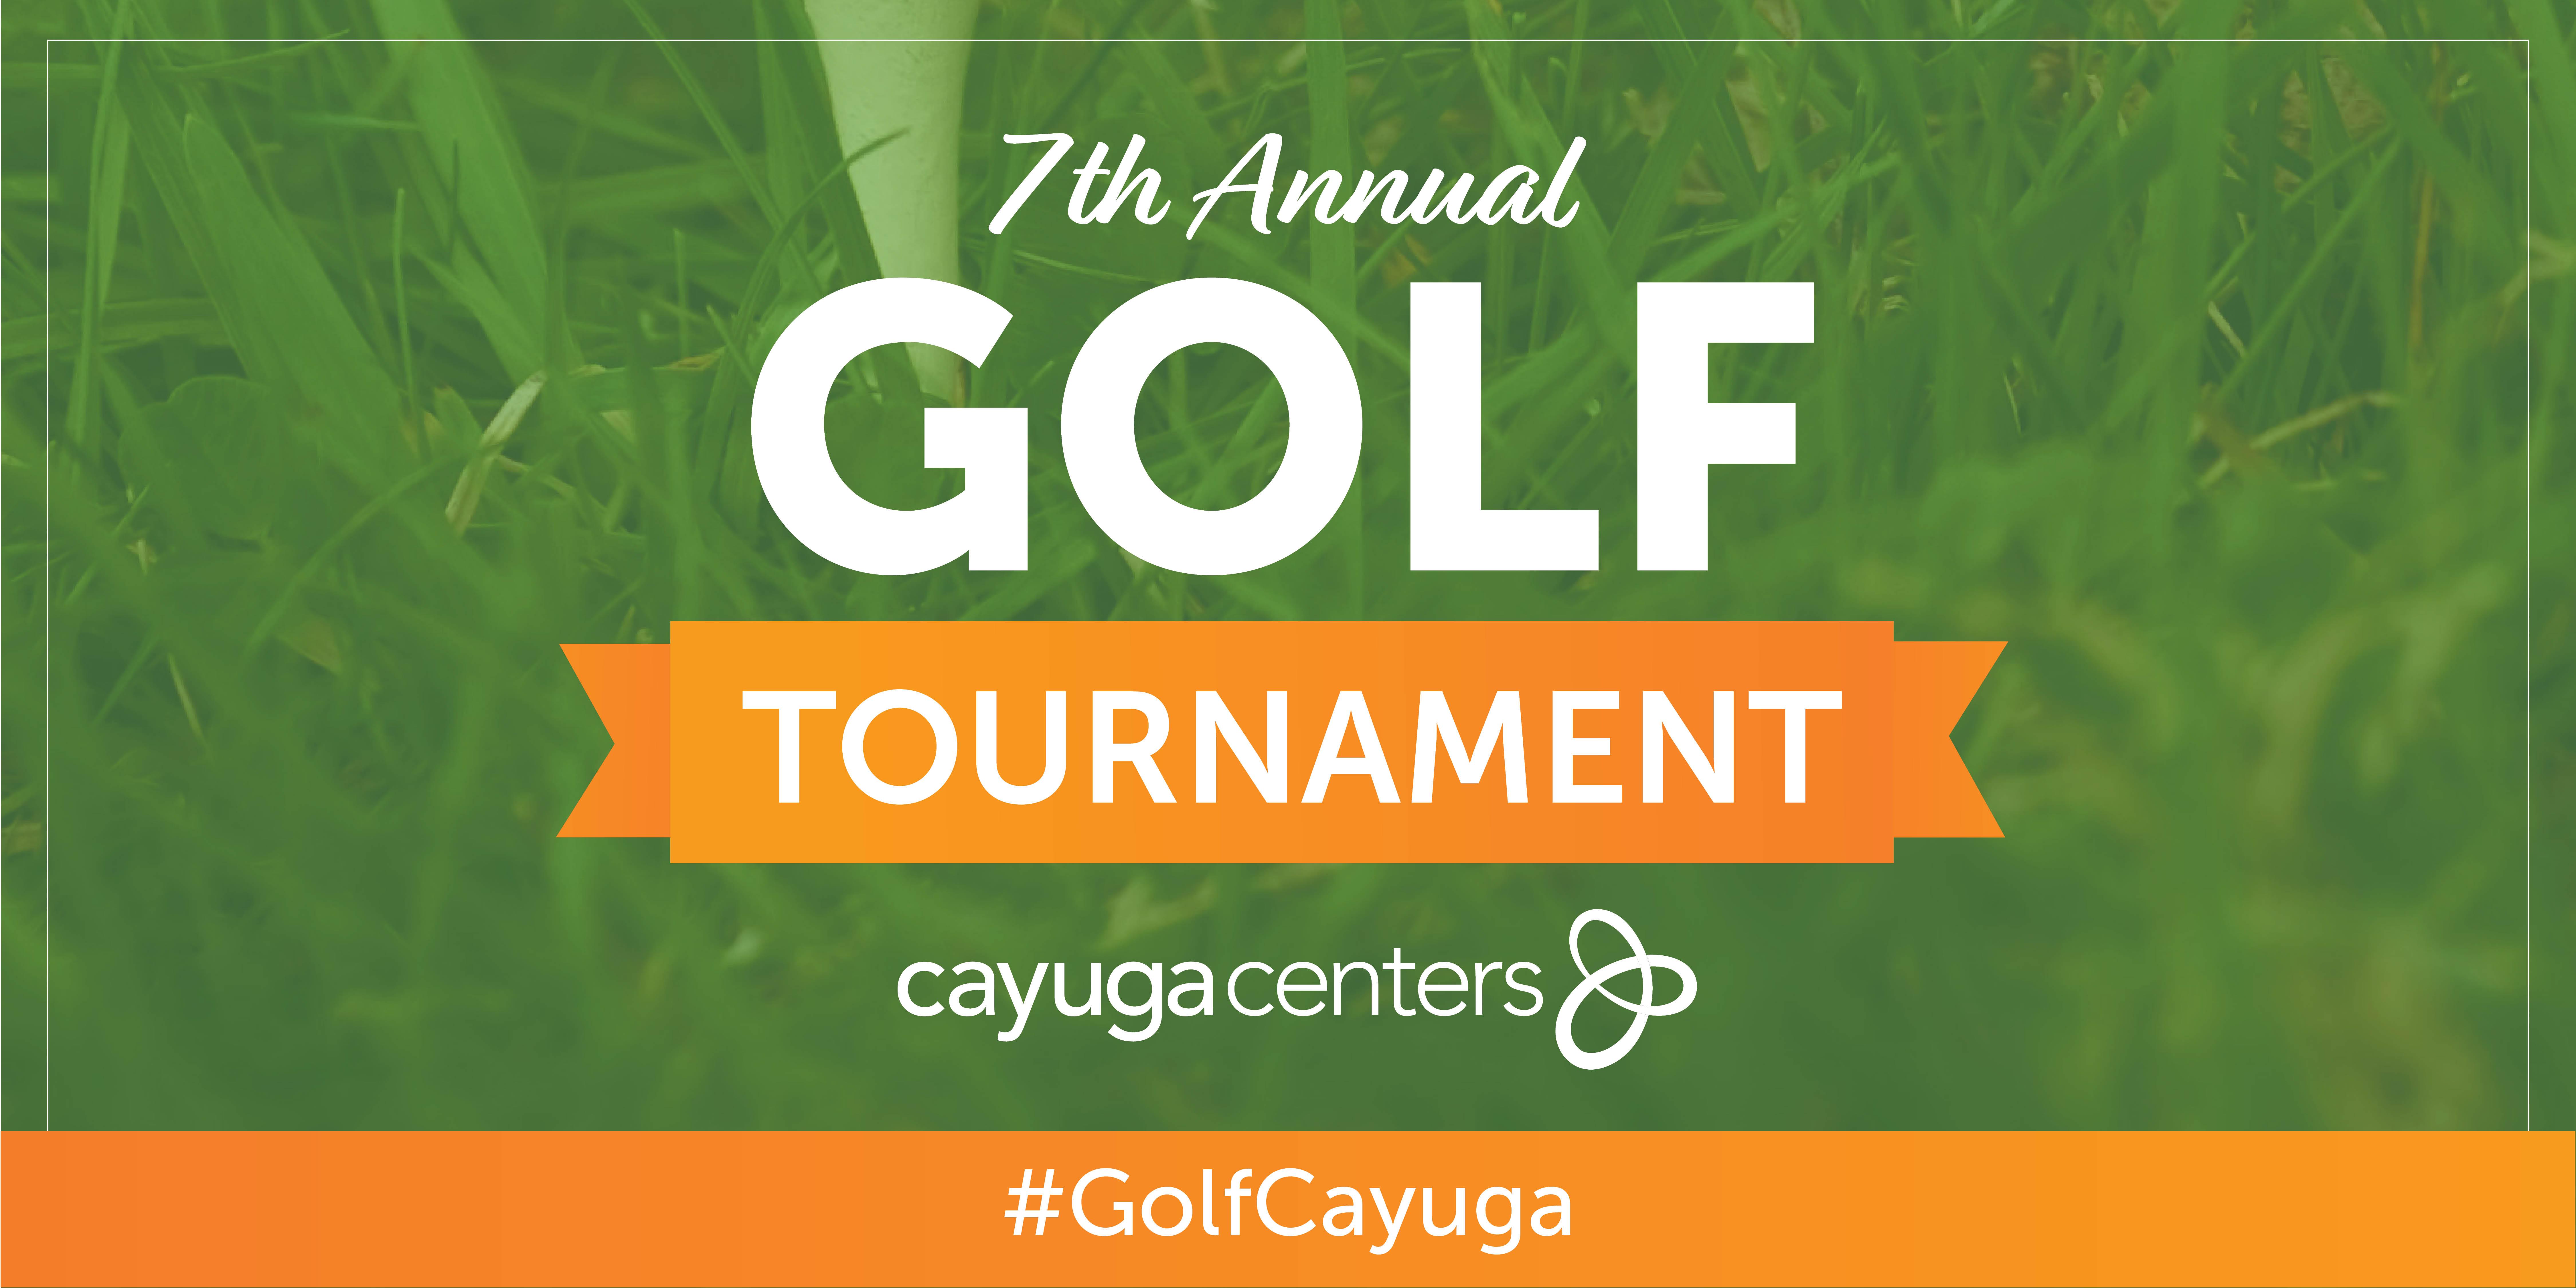 7th Annual Cayuga Centers Golf Tournament